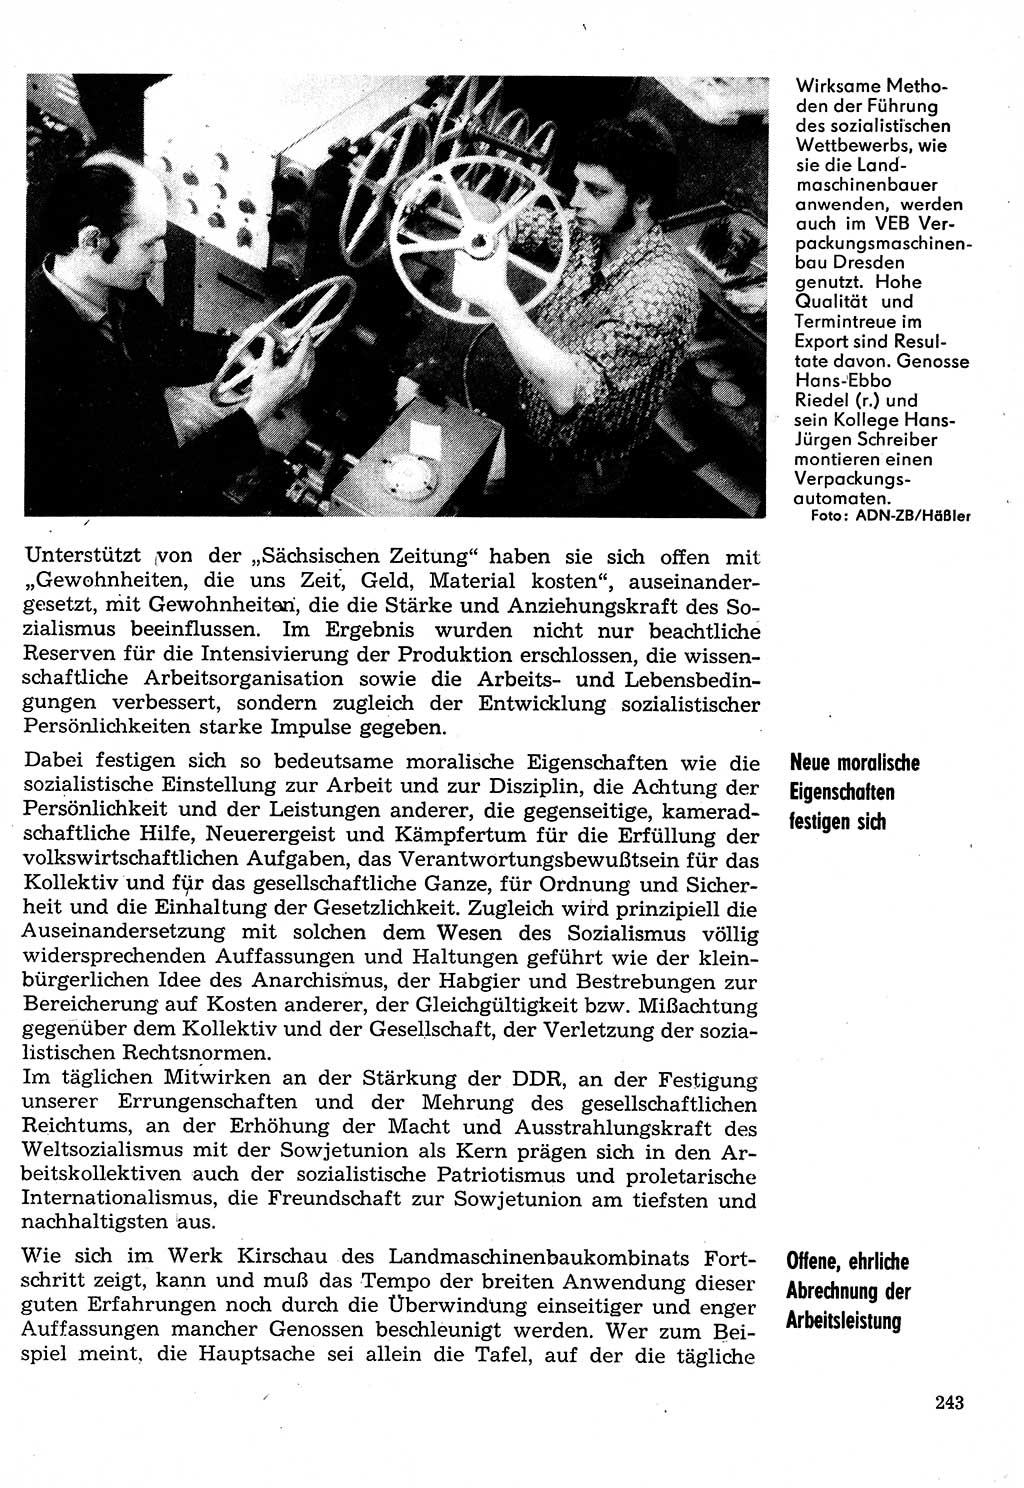 Neuer Weg (NW), Organ des Zentralkomitees (ZK) der SED (Sozialistische Einheitspartei Deutschlands) für Fragen des Parteilebens, 30. Jahrgang [Deutsche Demokratische Republik (DDR)] 1975, Seite 243 (NW ZK SED DDR 1975, S. 243)